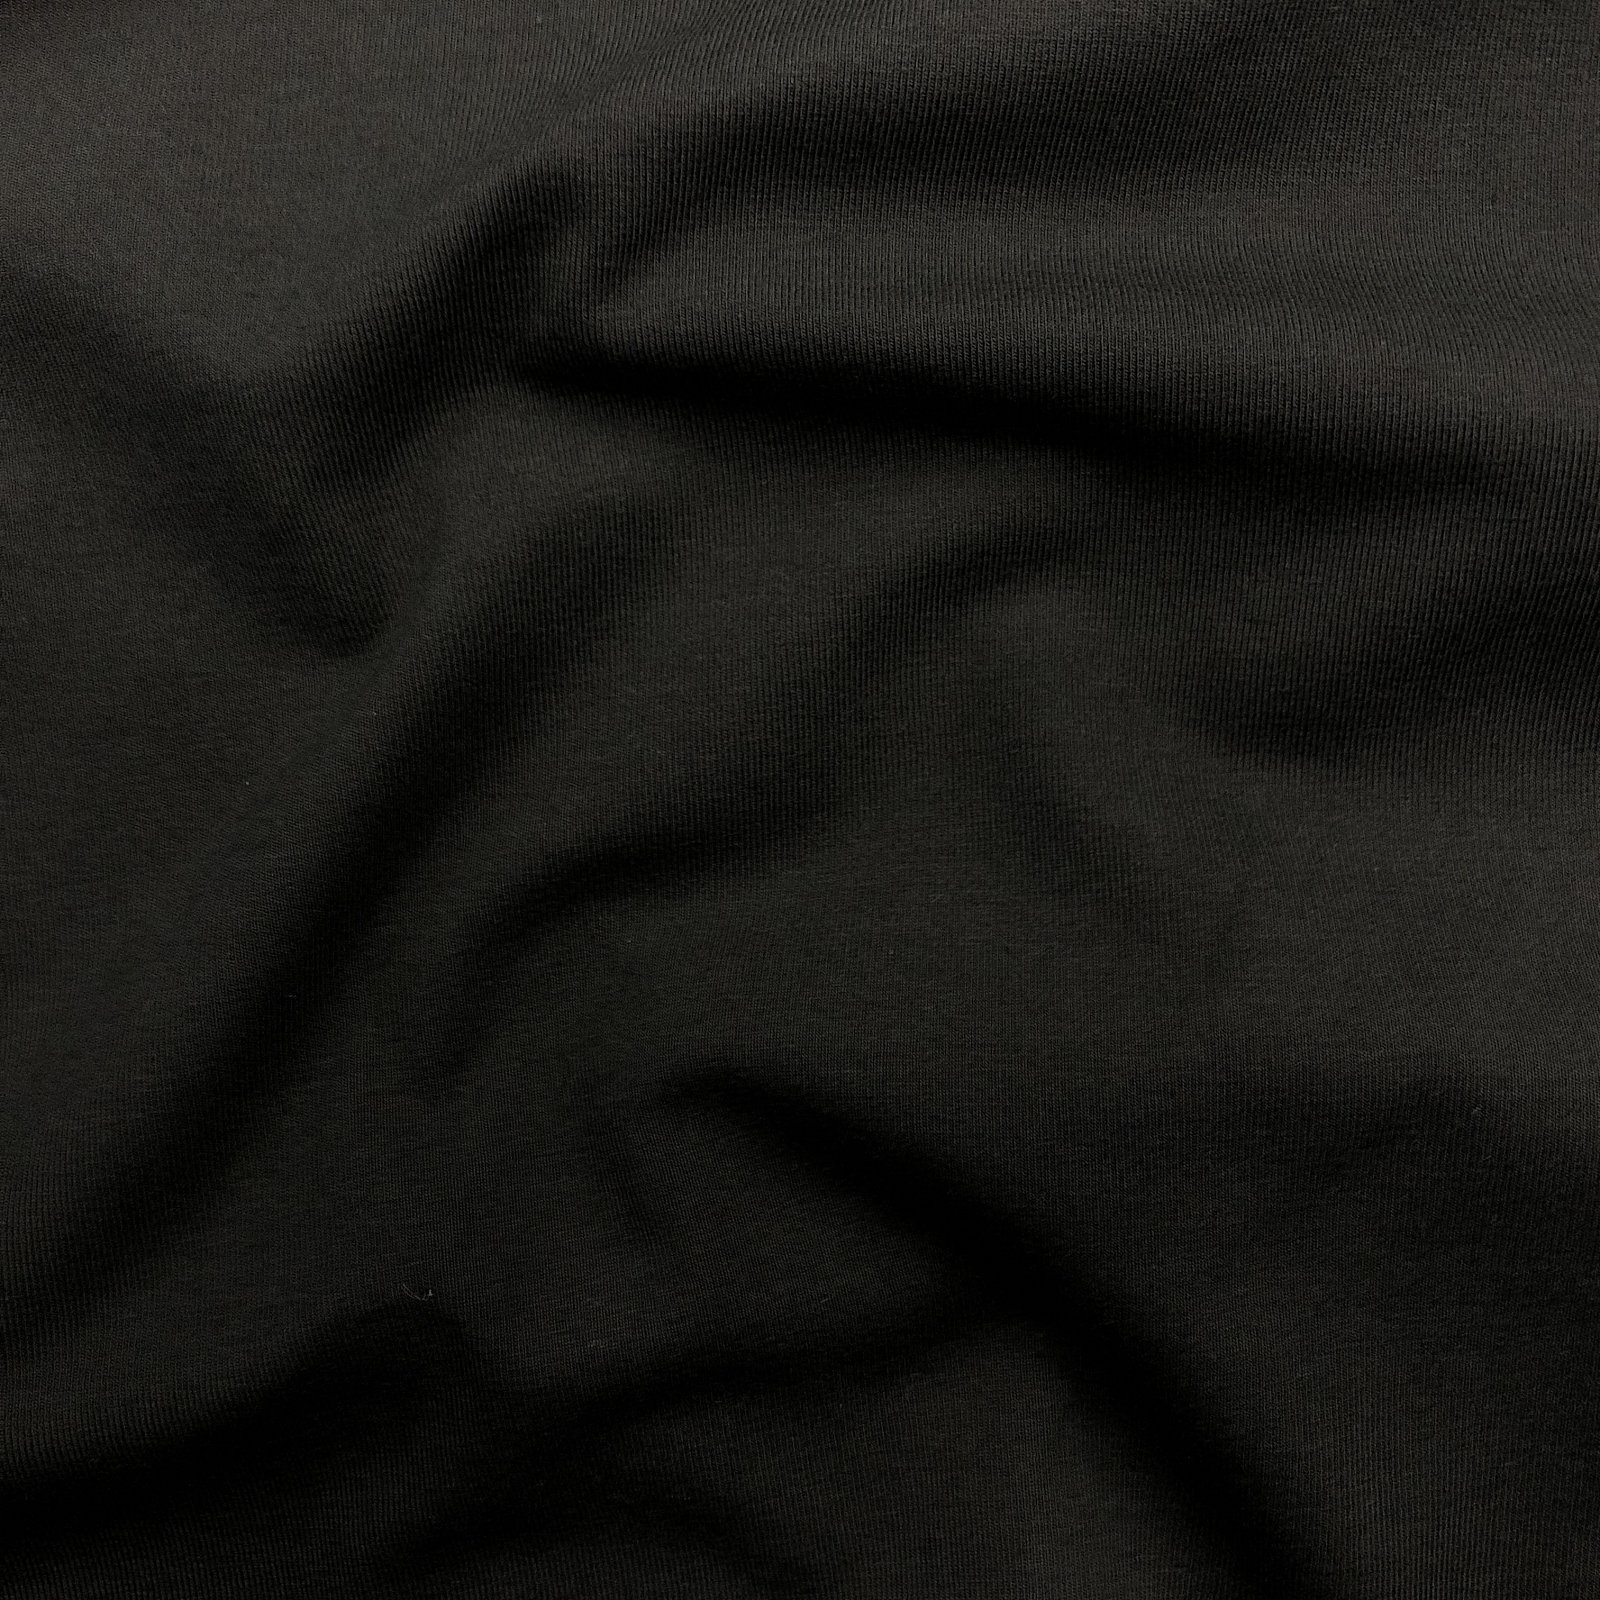 Yoga Cloth - Cotton/Spandex Knit - Black - Stonemountain